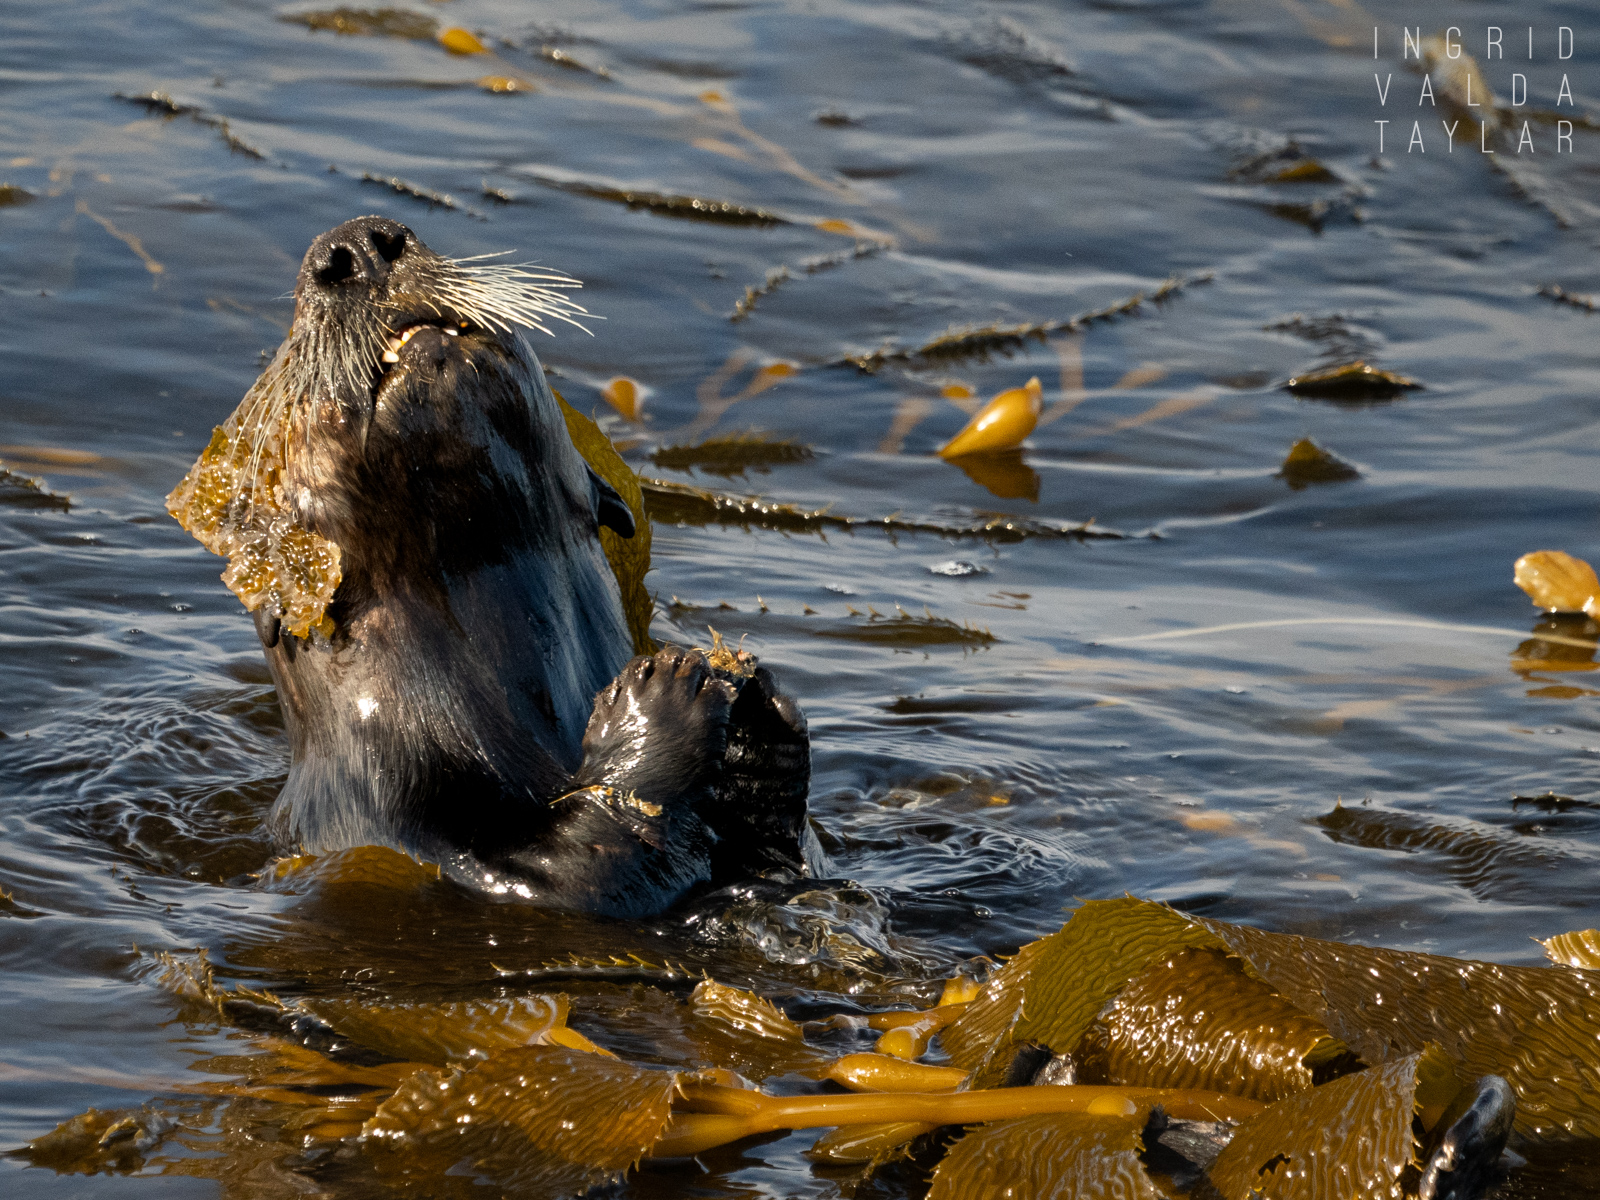 Southern Sea Otter in Kelp